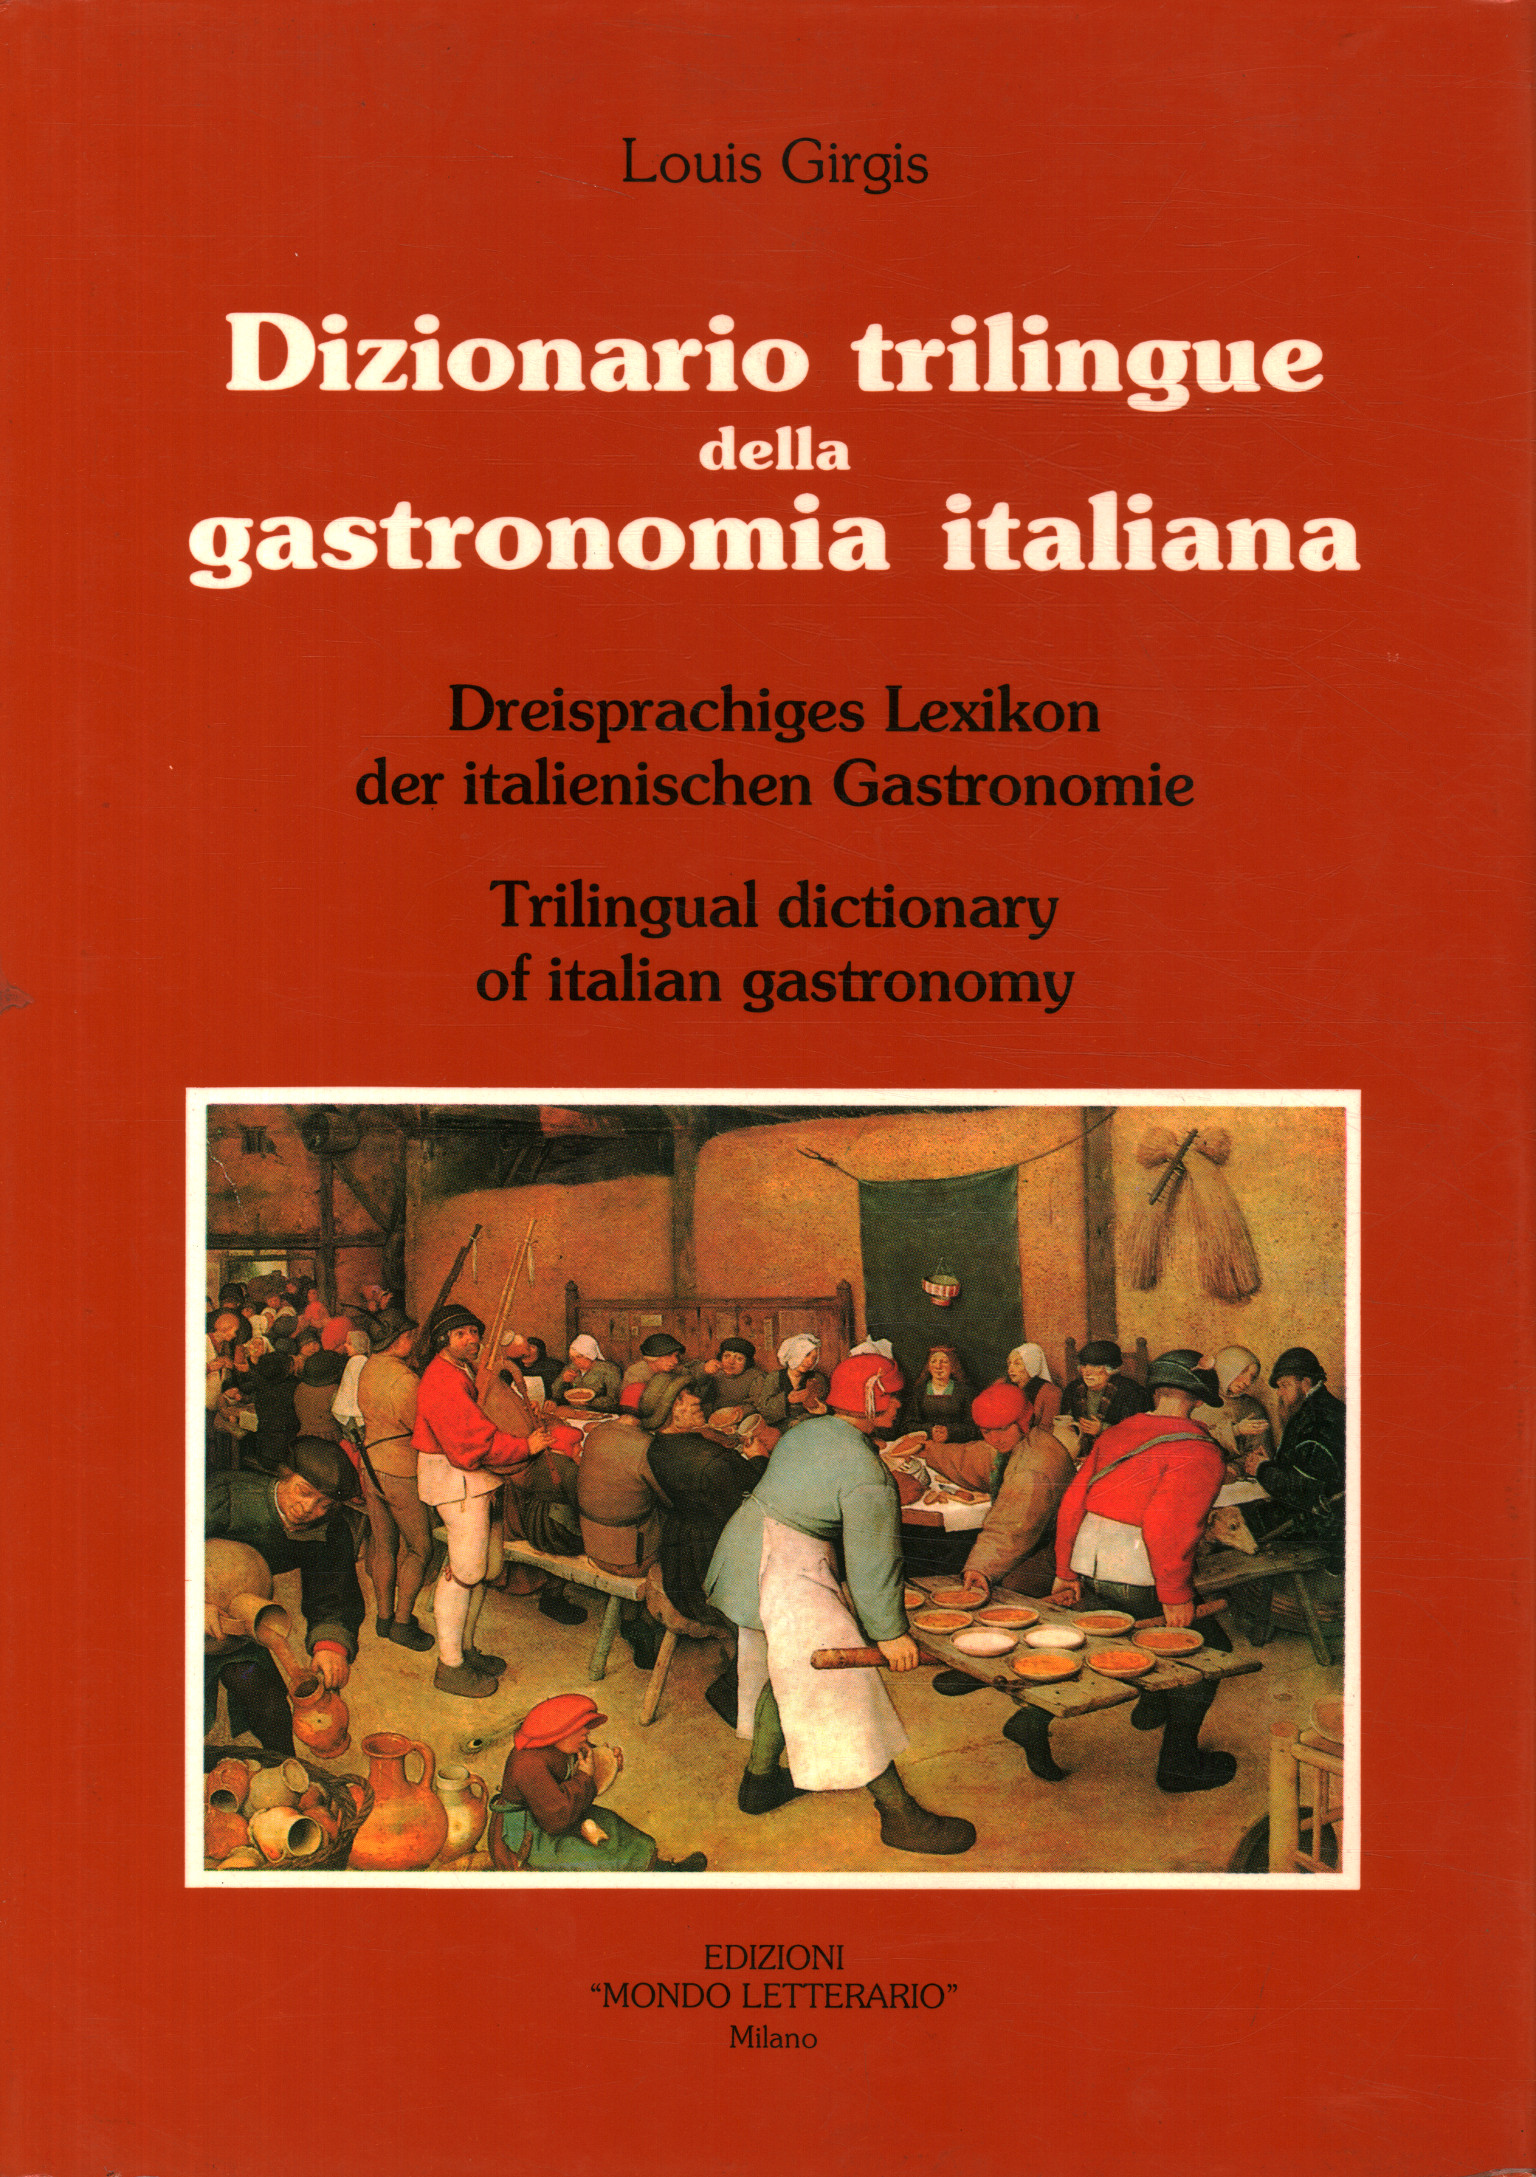 Dictionnaire trilingue de la gastronomie italienne